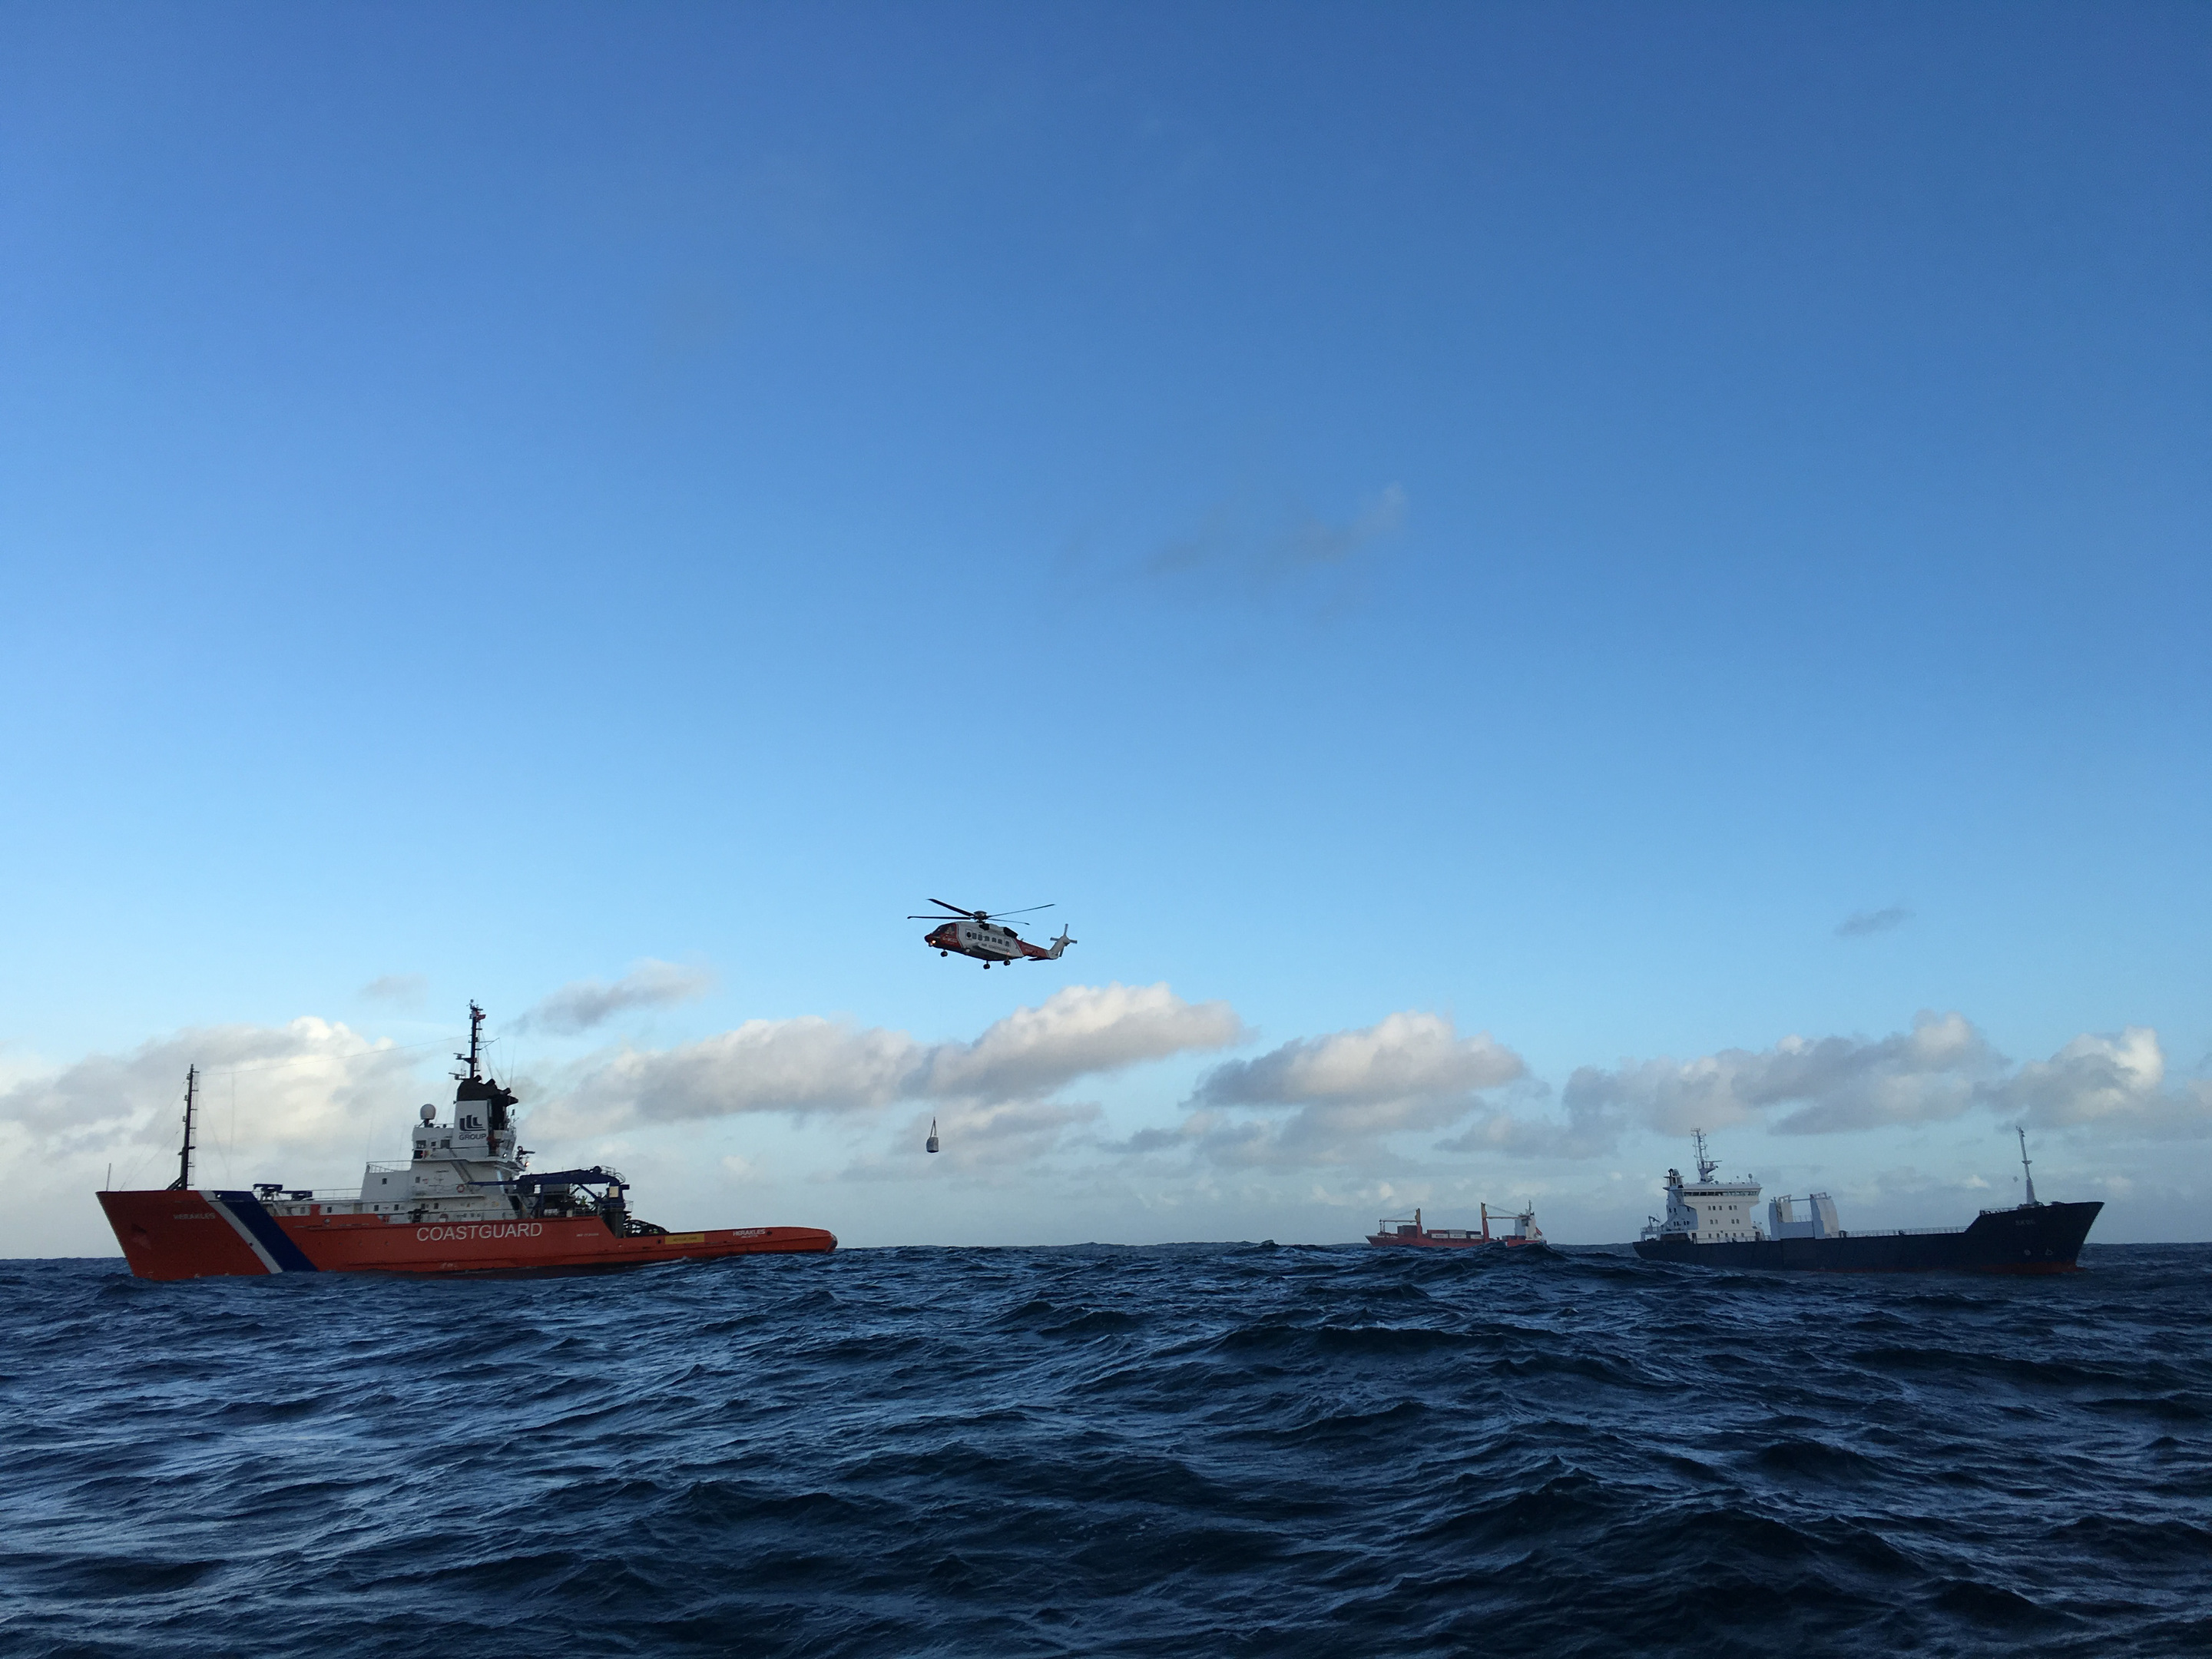 Stricken ship Skog is brought under tow by emergency tug Herakles